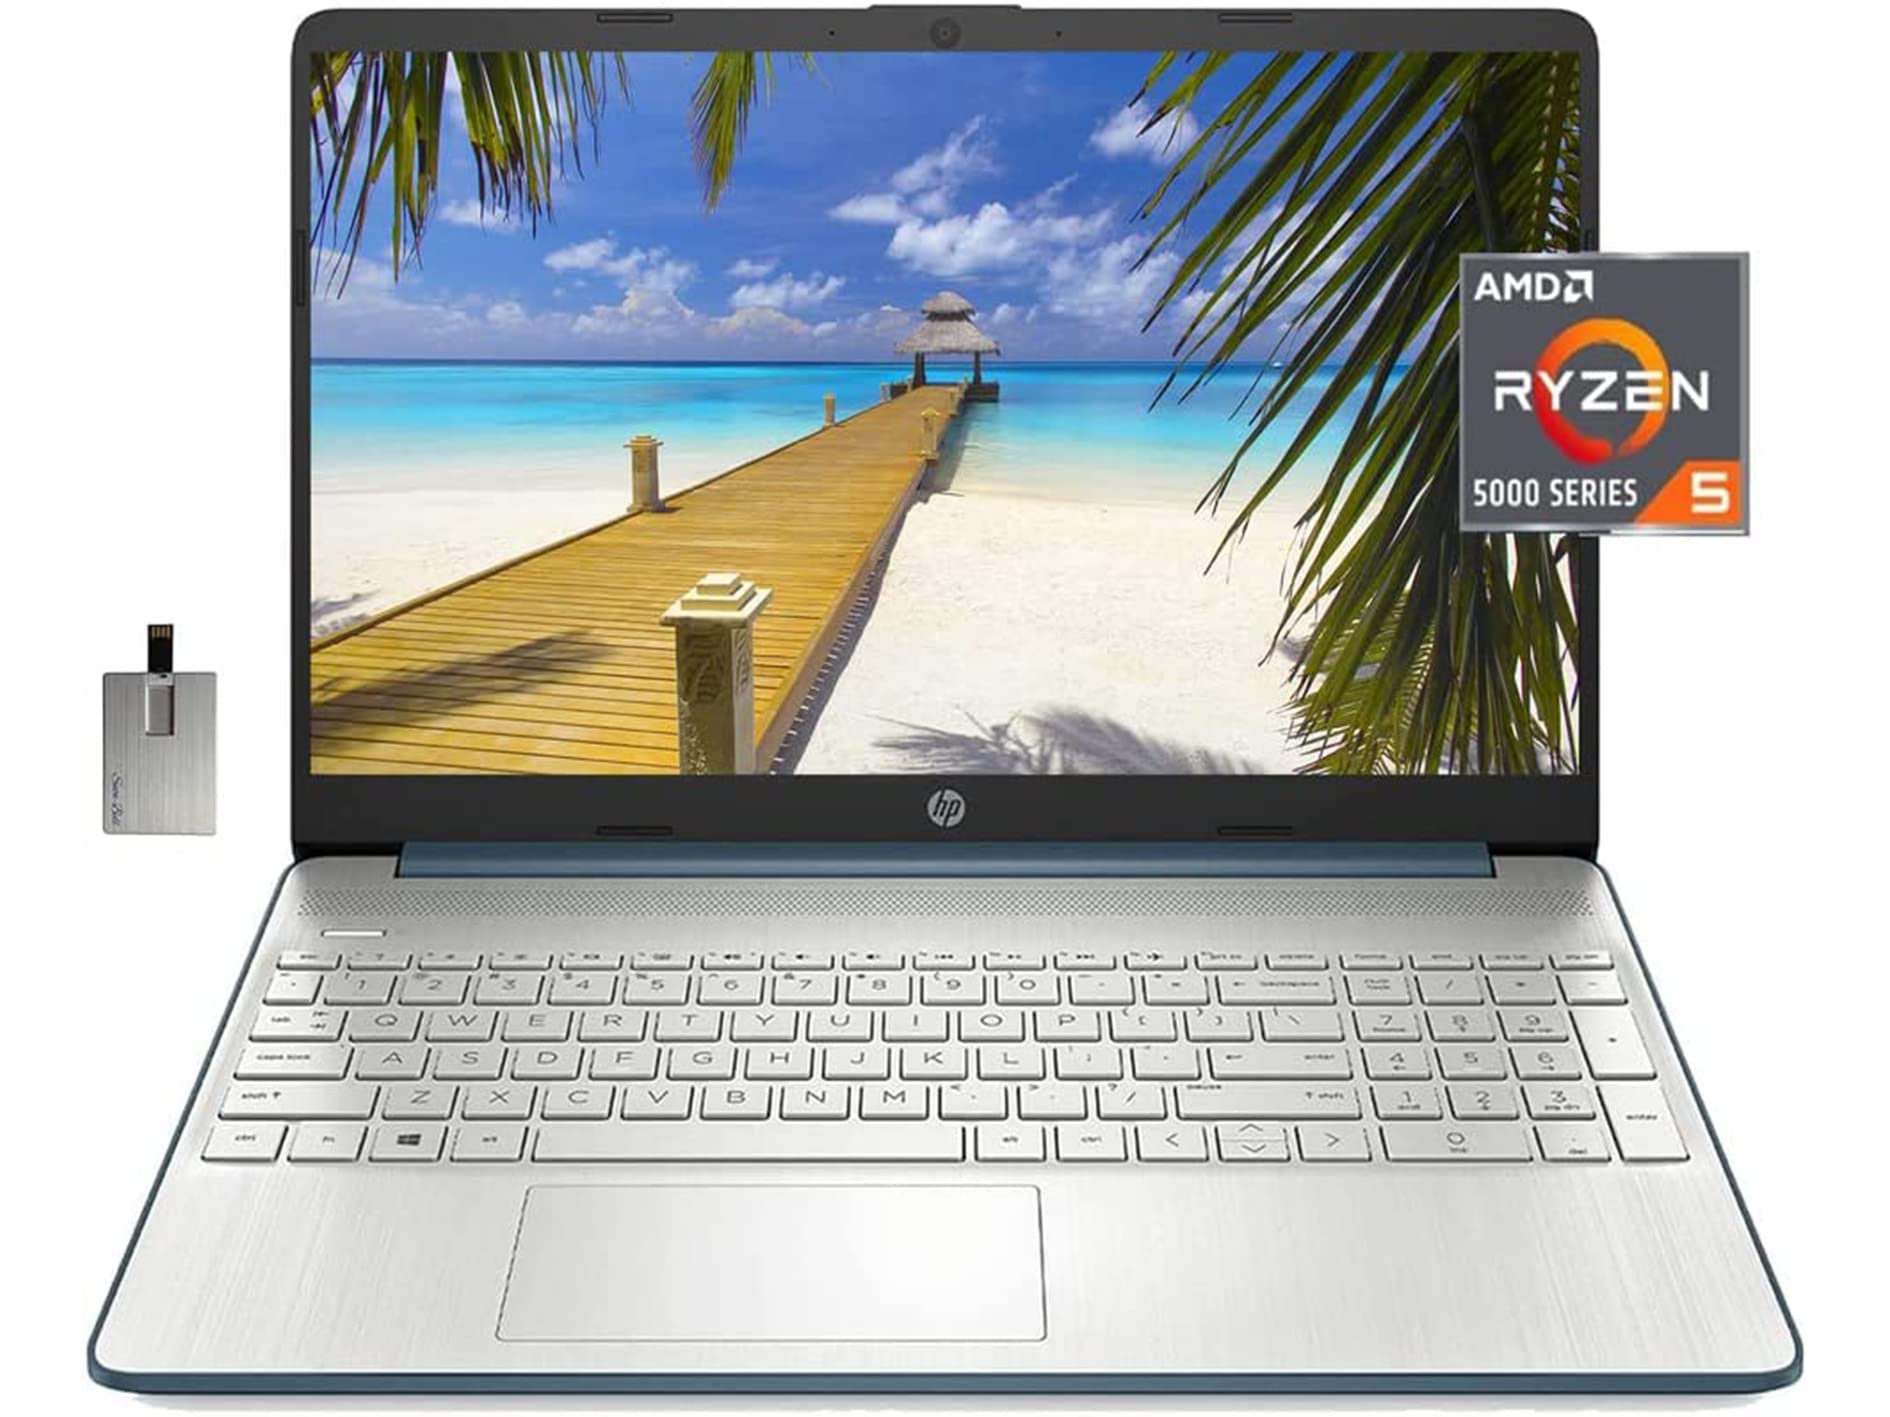 2022 HP 15.6" FHD Laptop Computer, AMD Ryzen 5-5500U Processor(Beats Intel i7-1065G7), 32GB RAM, 1TB PCIe SSD, AMD Radeon Graphics, HD Webcam, Bluetooth, Wi-fi, Win 11, Blue, 32GB USB Card